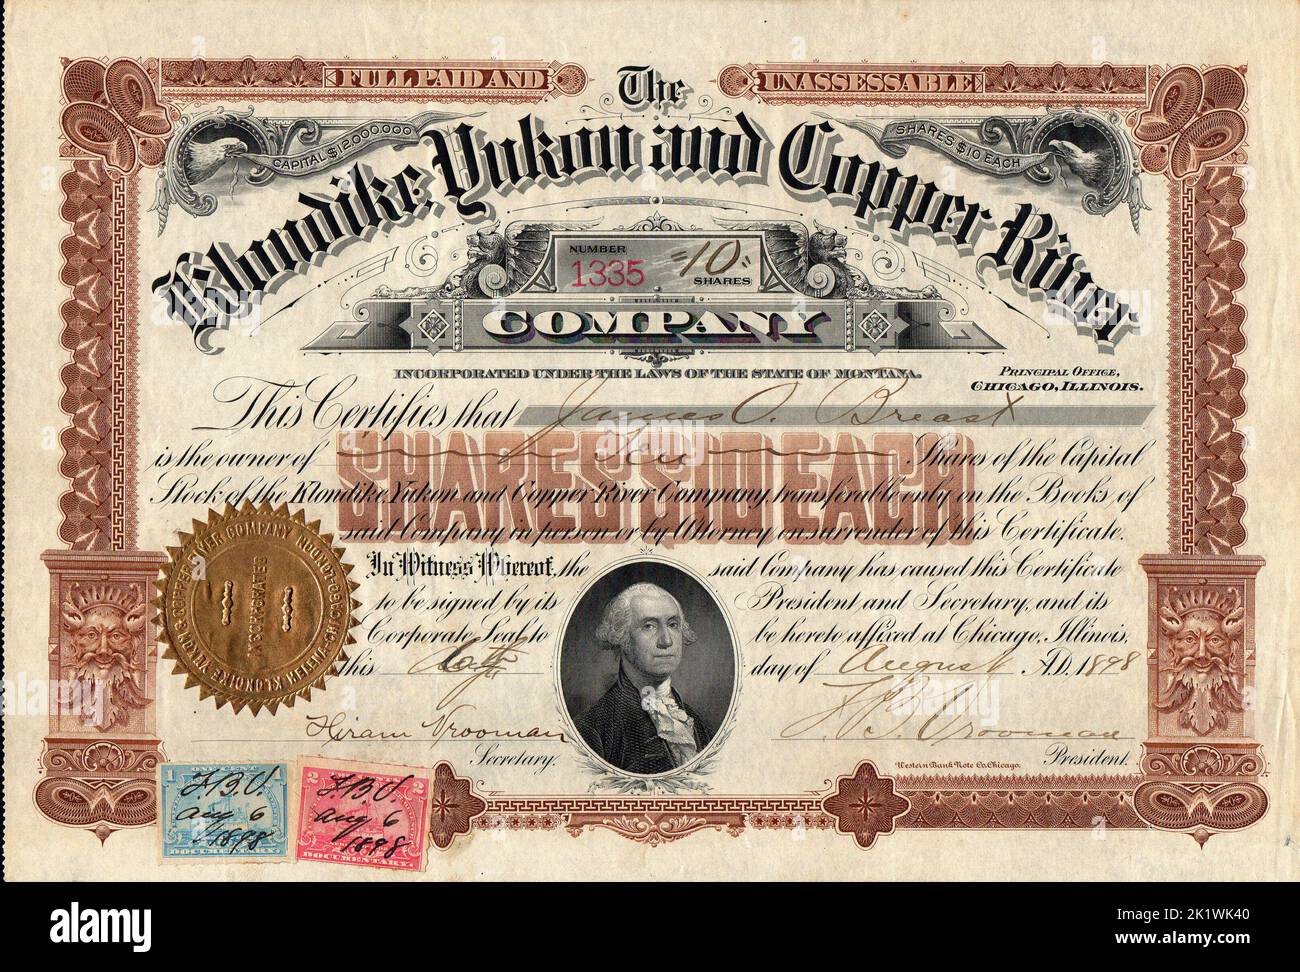 1898 CERTIFICAT de stock DE LA COMPAGNIE KLONDIKE, YUKON ET COPPER RIVER - document sur la ruée vers l'or du Klondike Banque D'Images